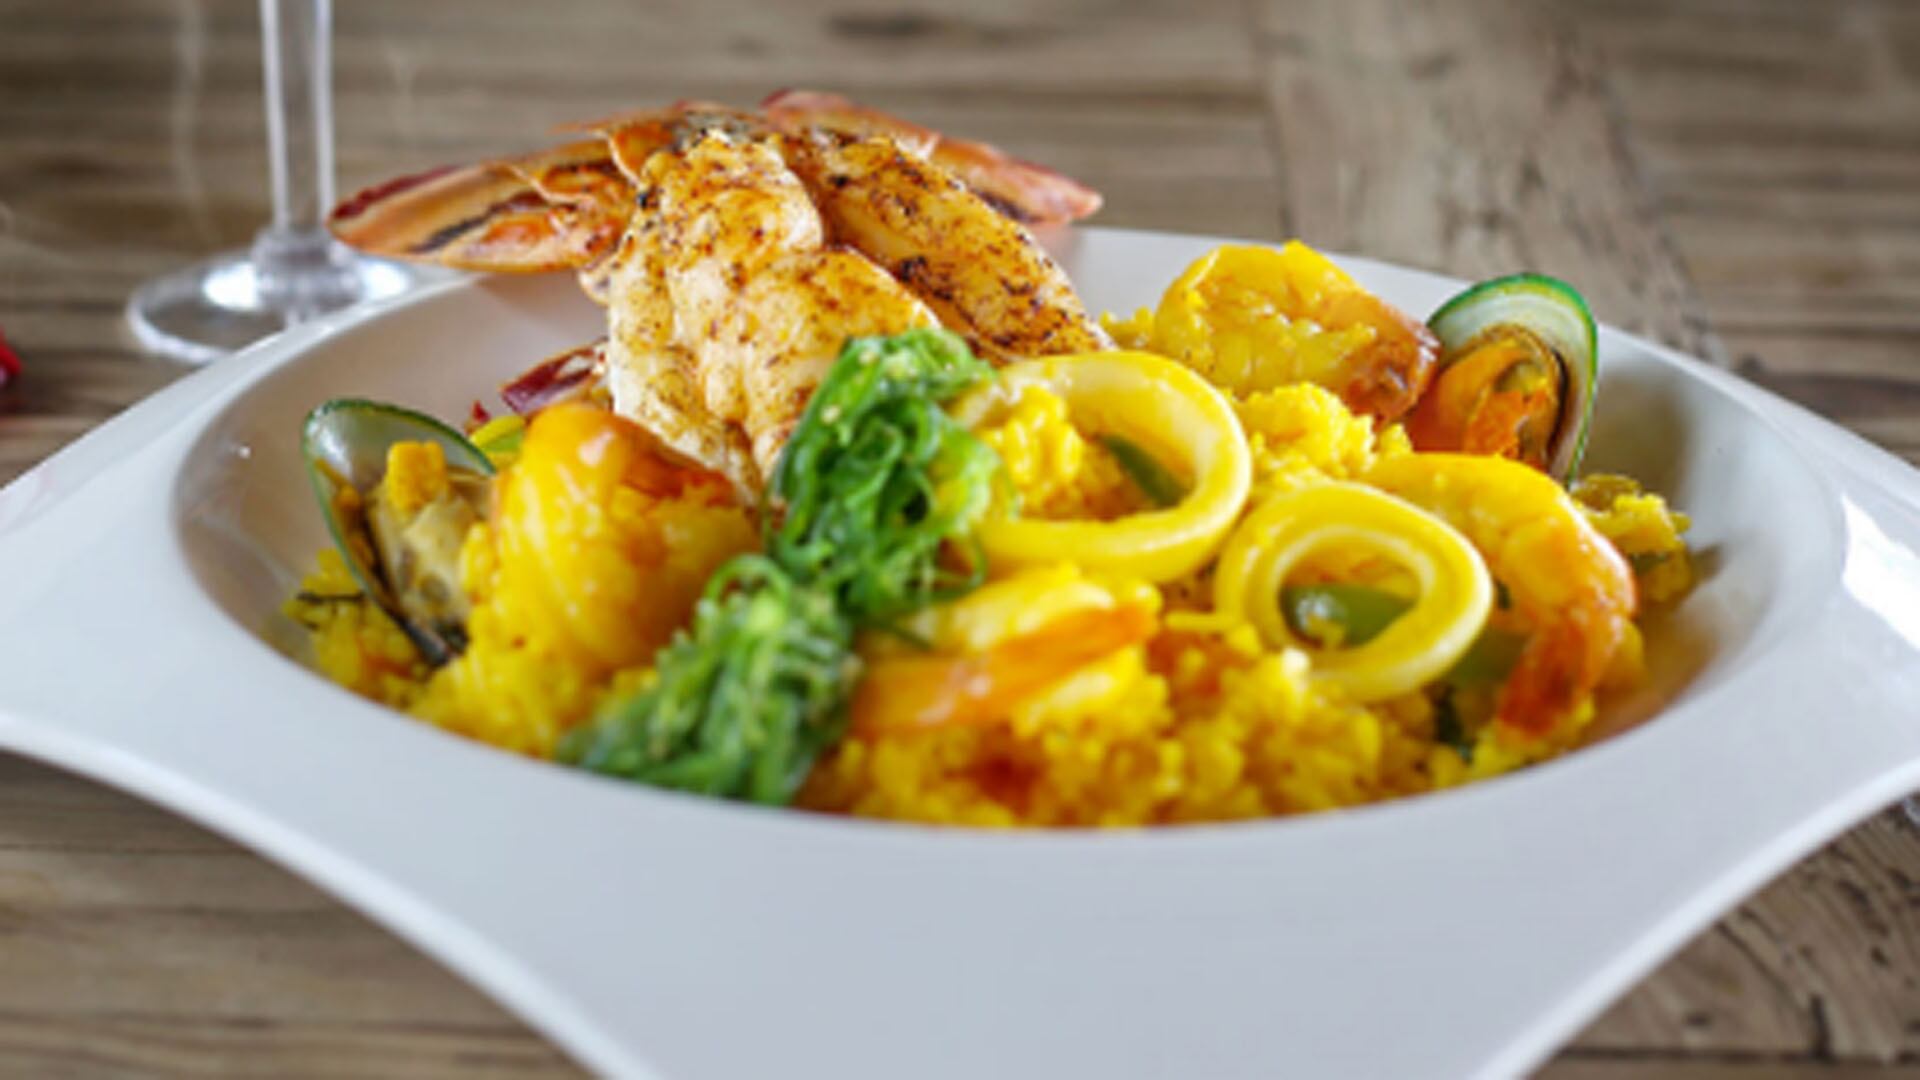 Aruba cuenta con una amplia carta gastronómica.